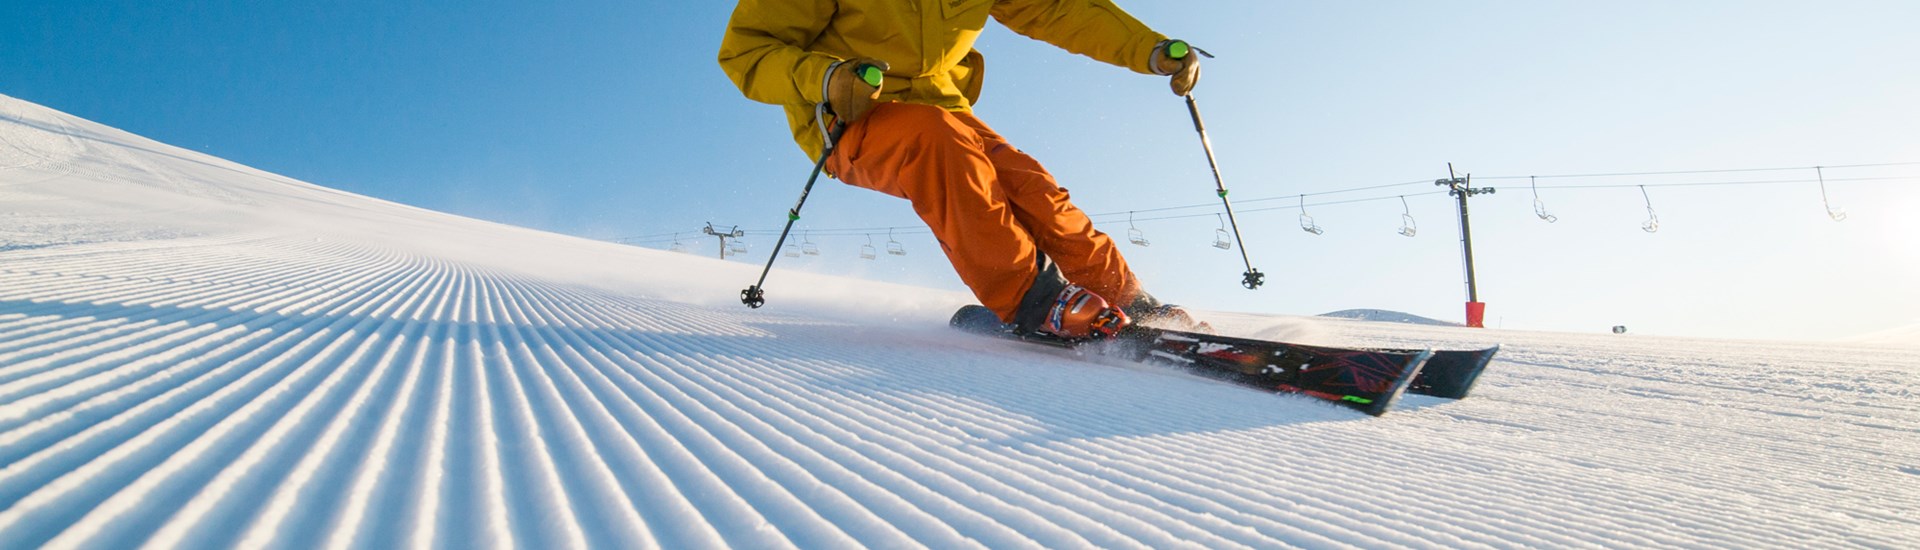 Cardrona Ski Resort - Skiing in New Zealand - Carving - Ski Fast - 